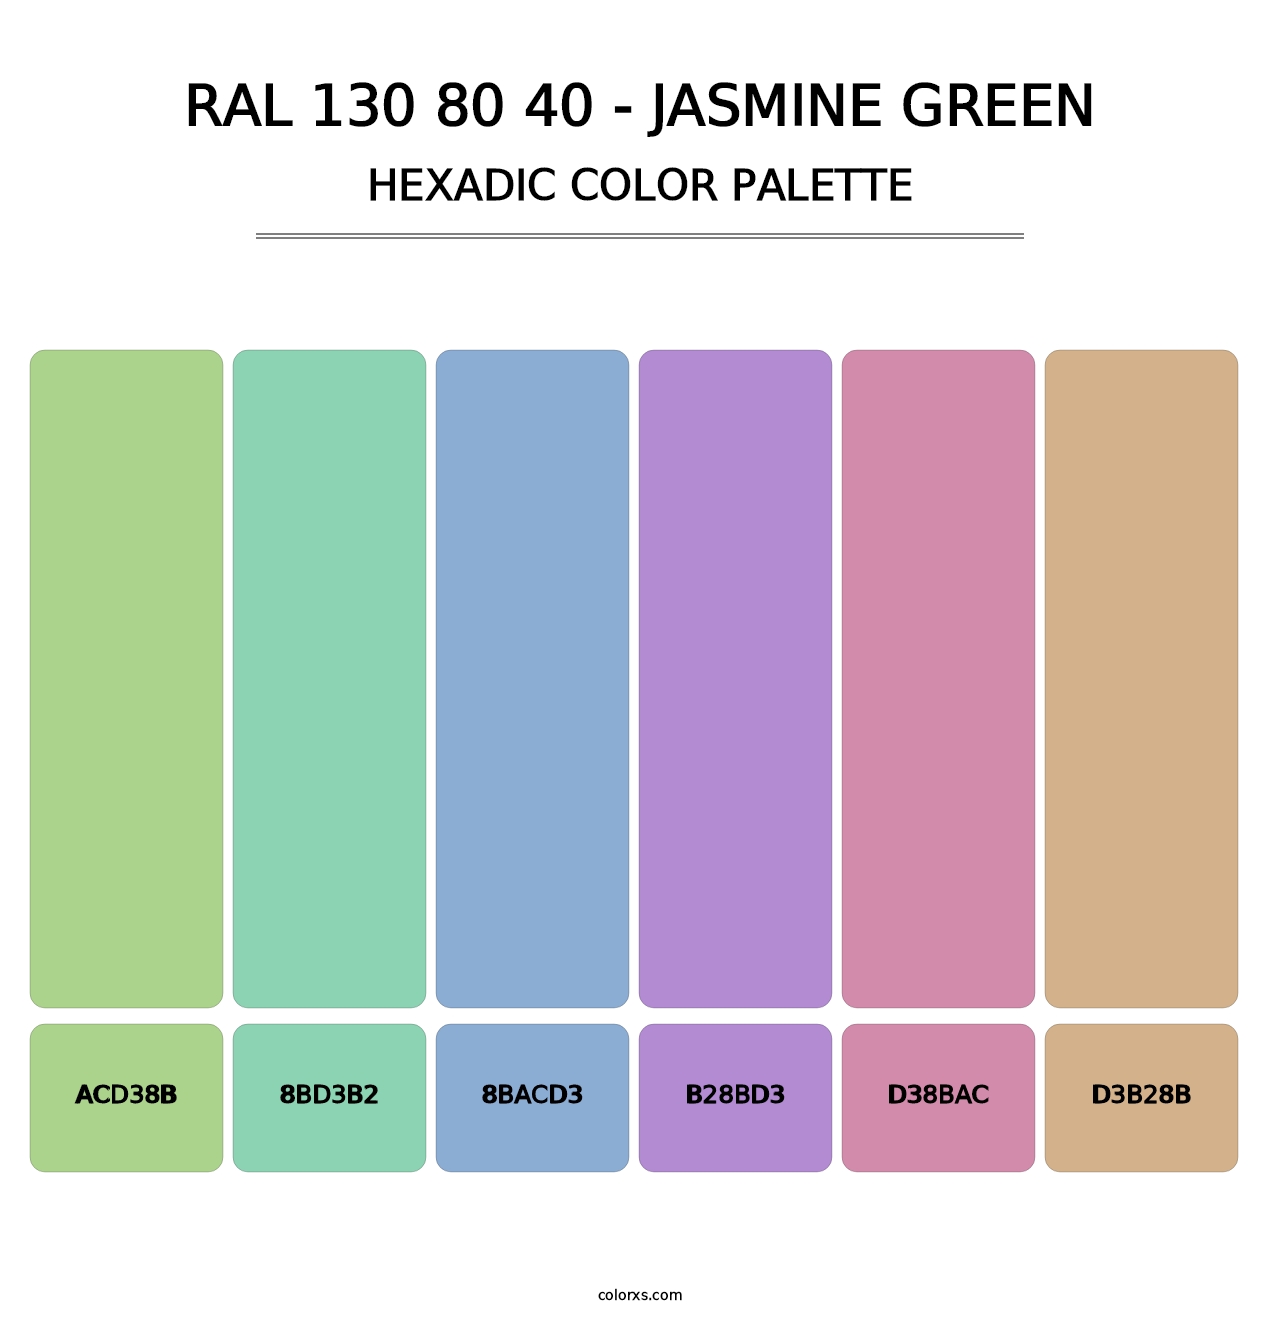 RAL 130 80 40 - Jasmine Green - Hexadic Color Palette